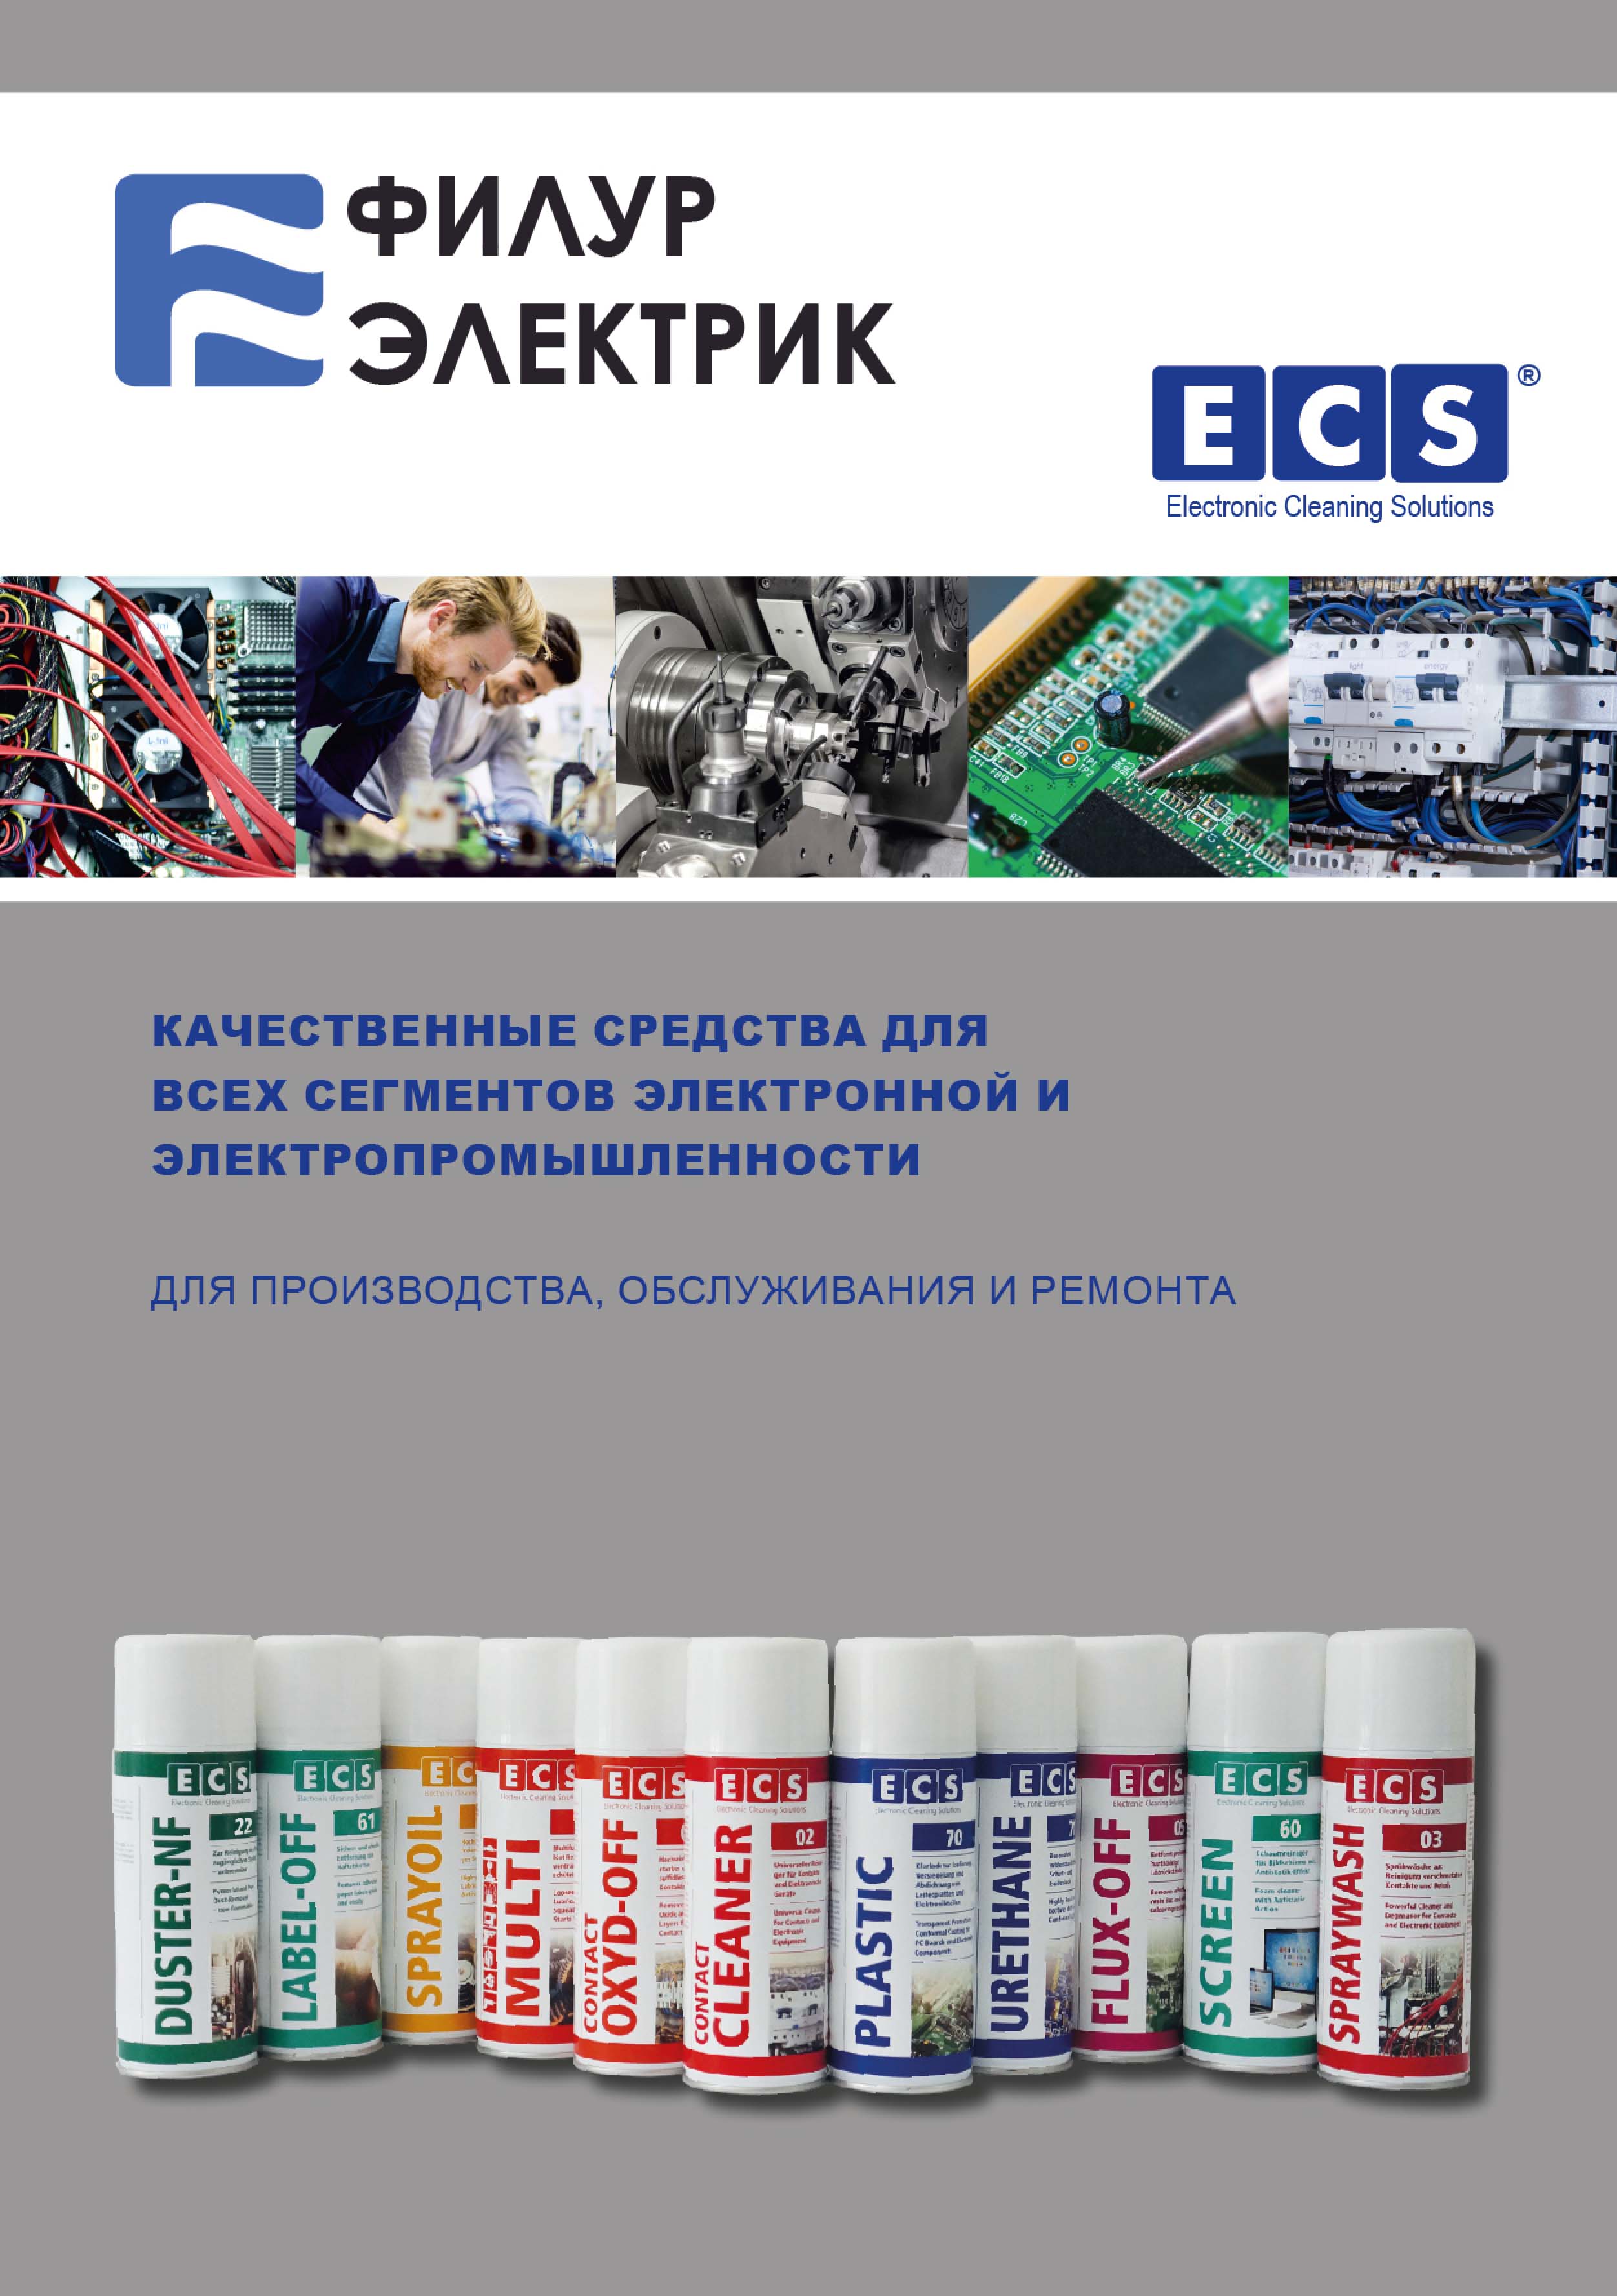 Матеріали ECS для виробництва, обслуговування та ремонту